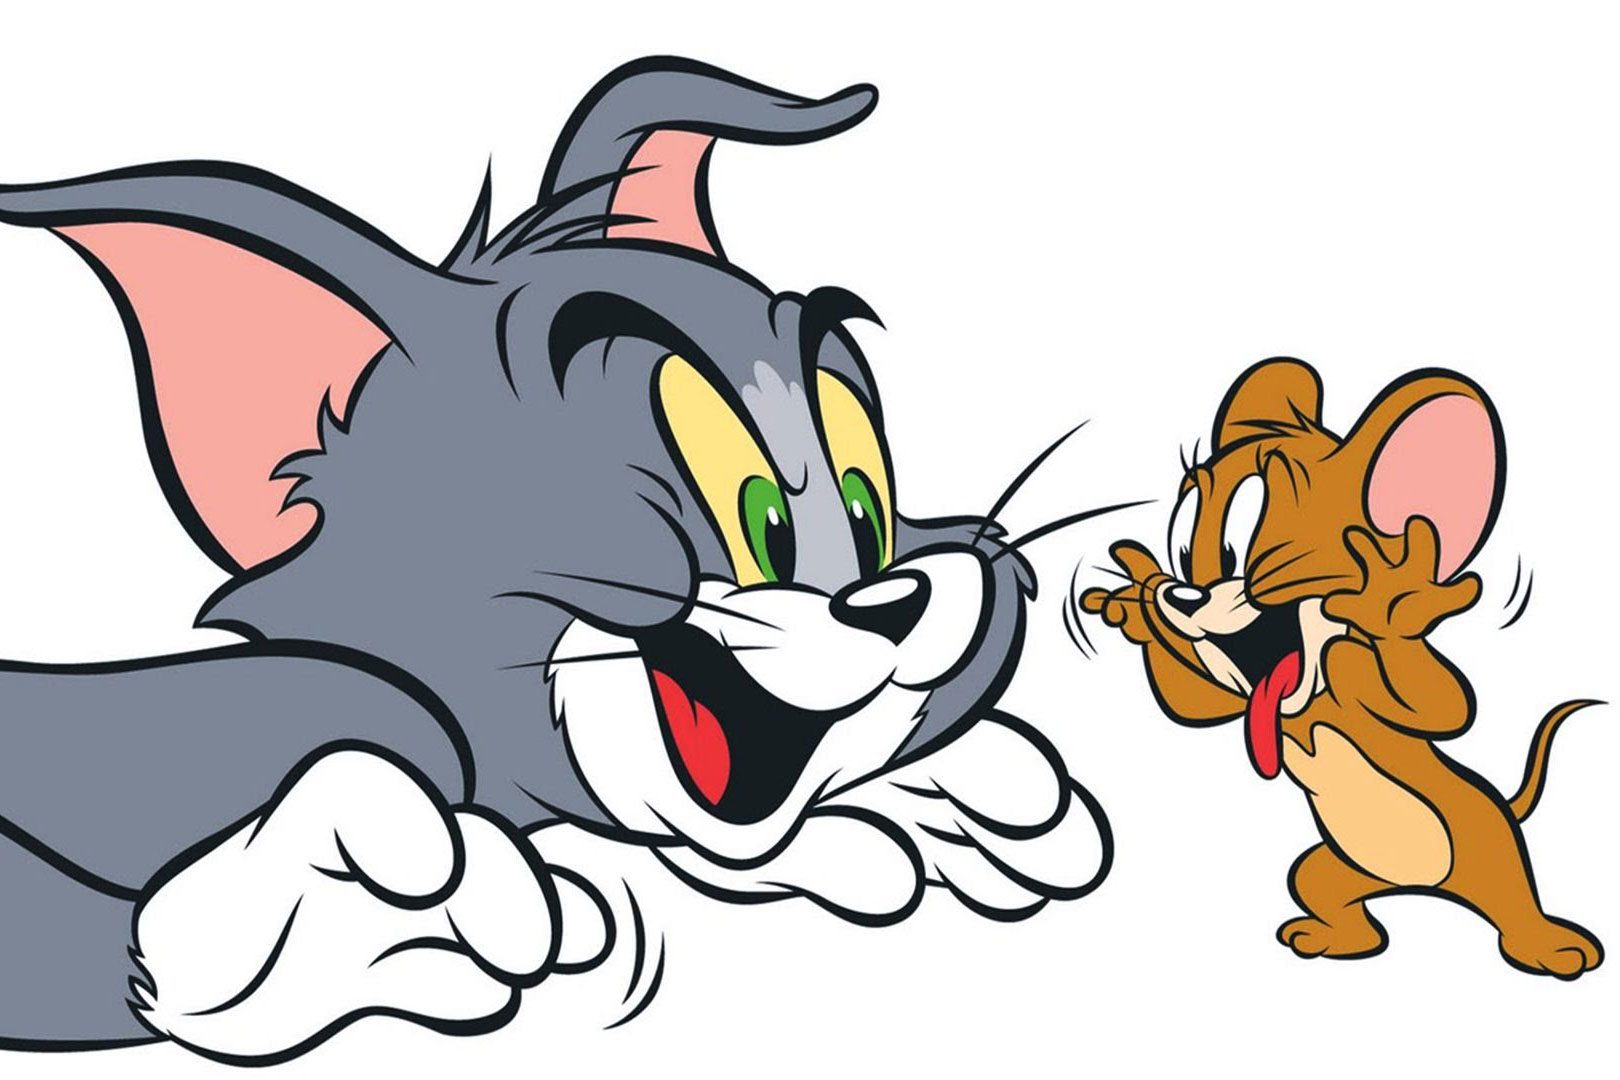 Luminária Jerry: Conheça a luminária inspirada no desenho Tom e Jerry